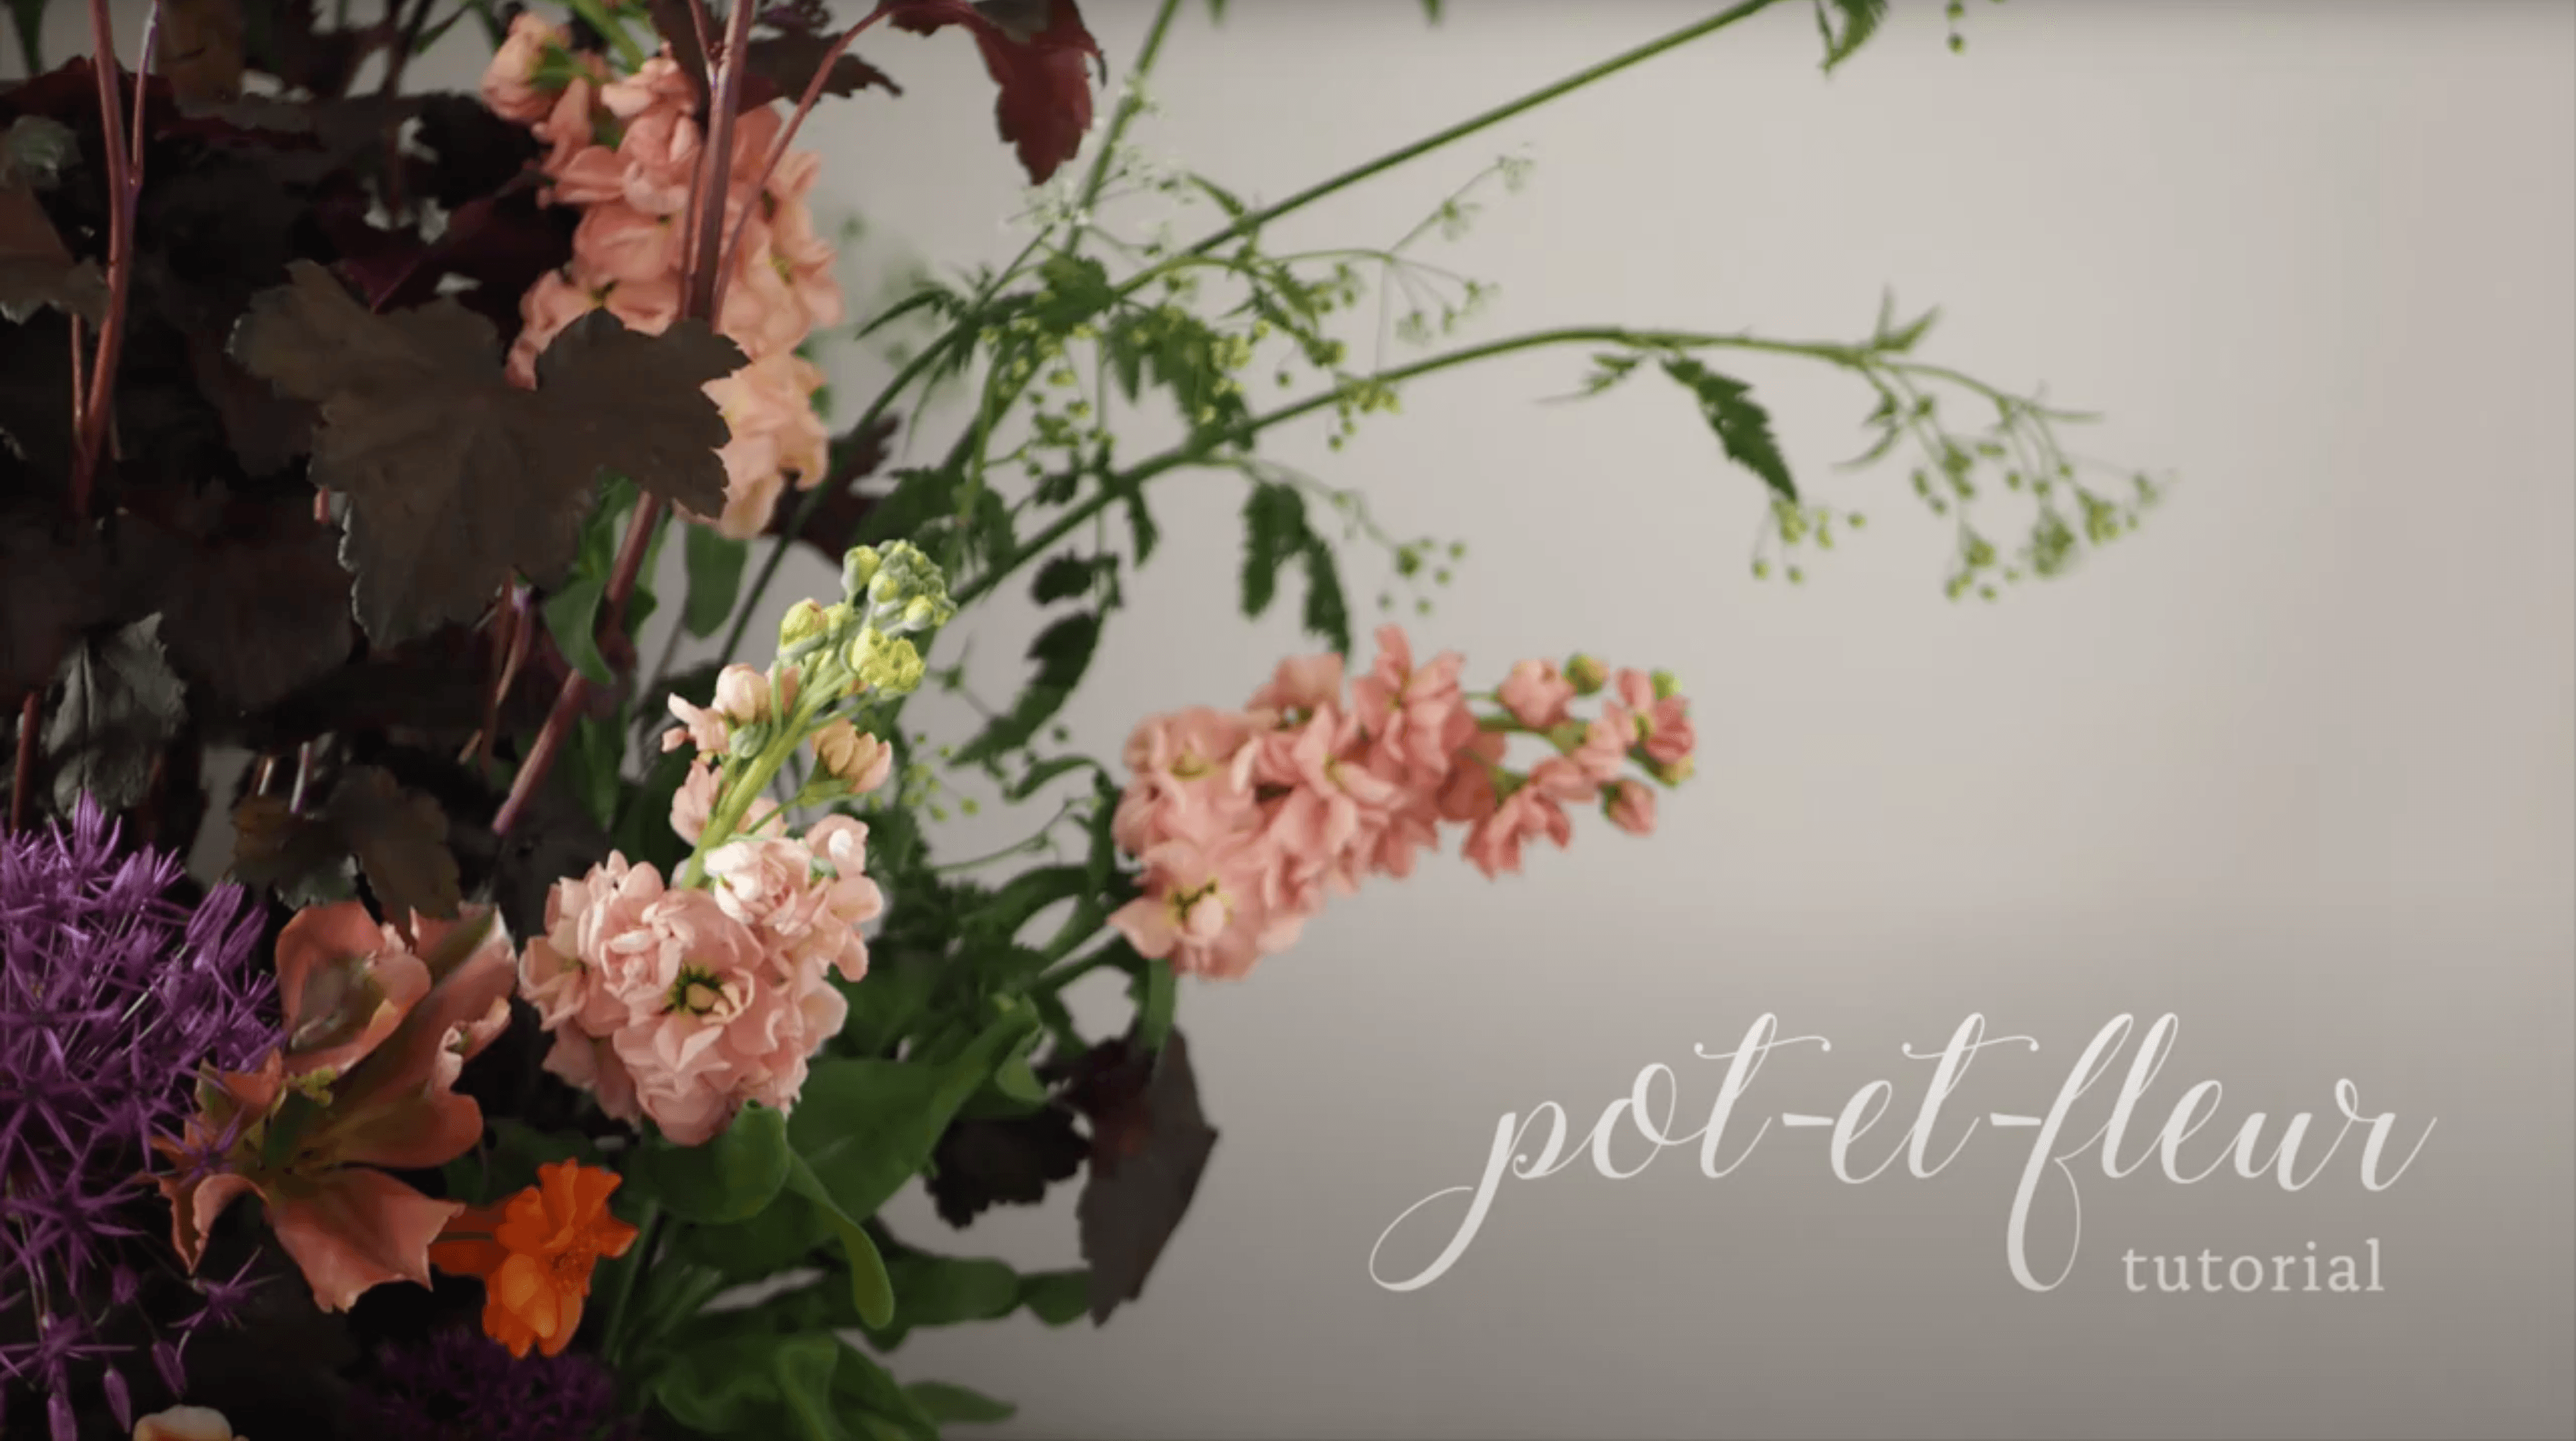 Pot de Fleurs Design – Pots de Fleurs and Co